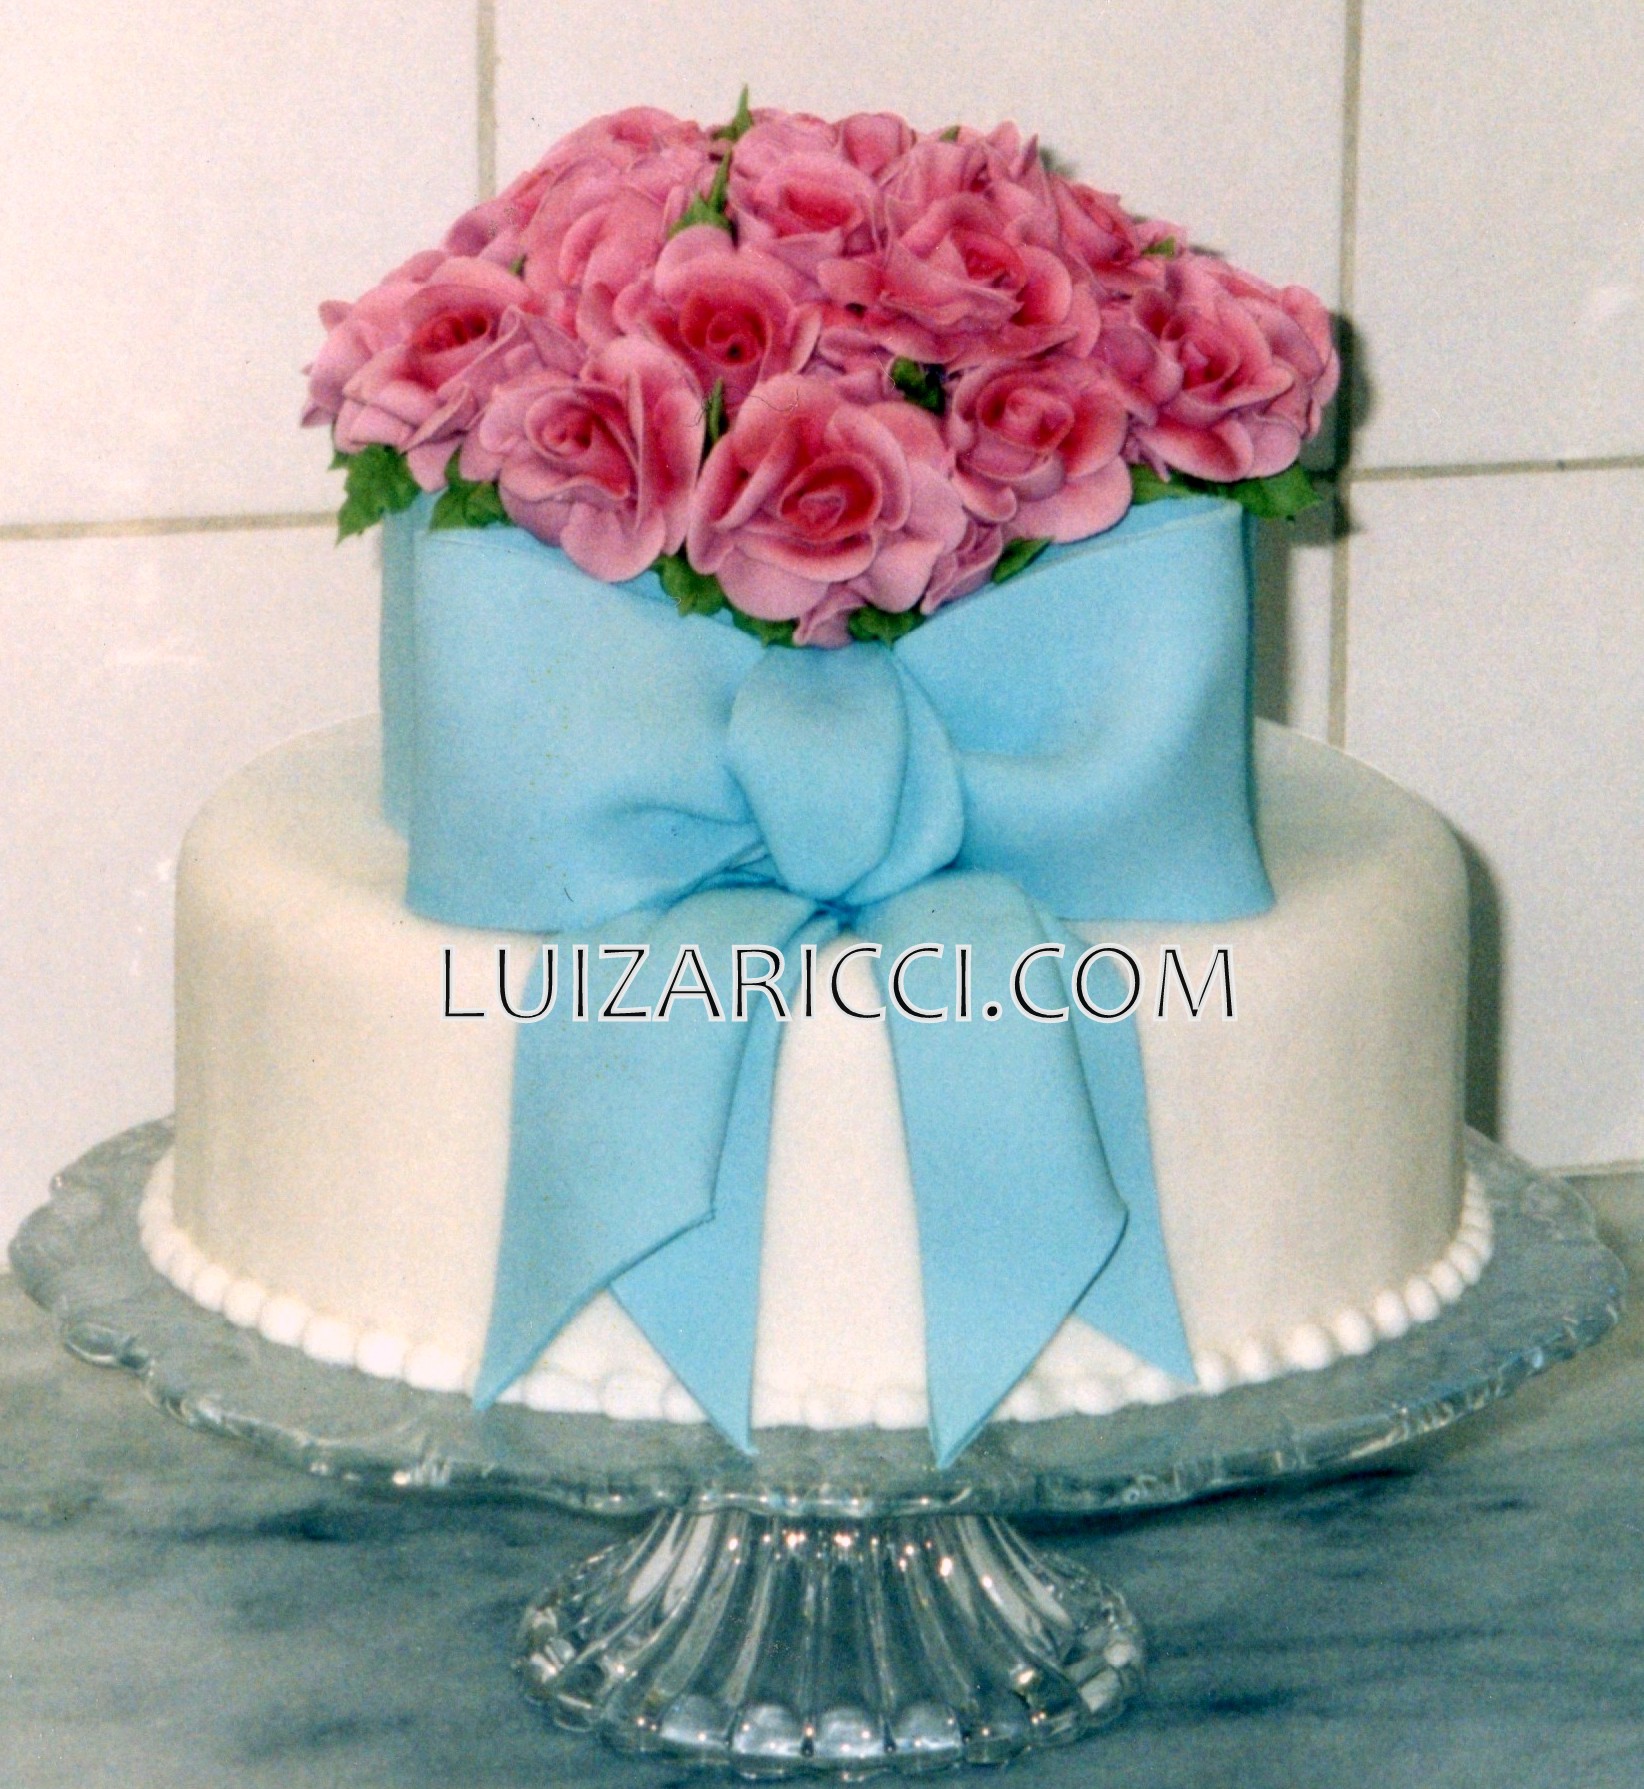 bolos-de-casamentos-decorados-com-pasta-americana-10